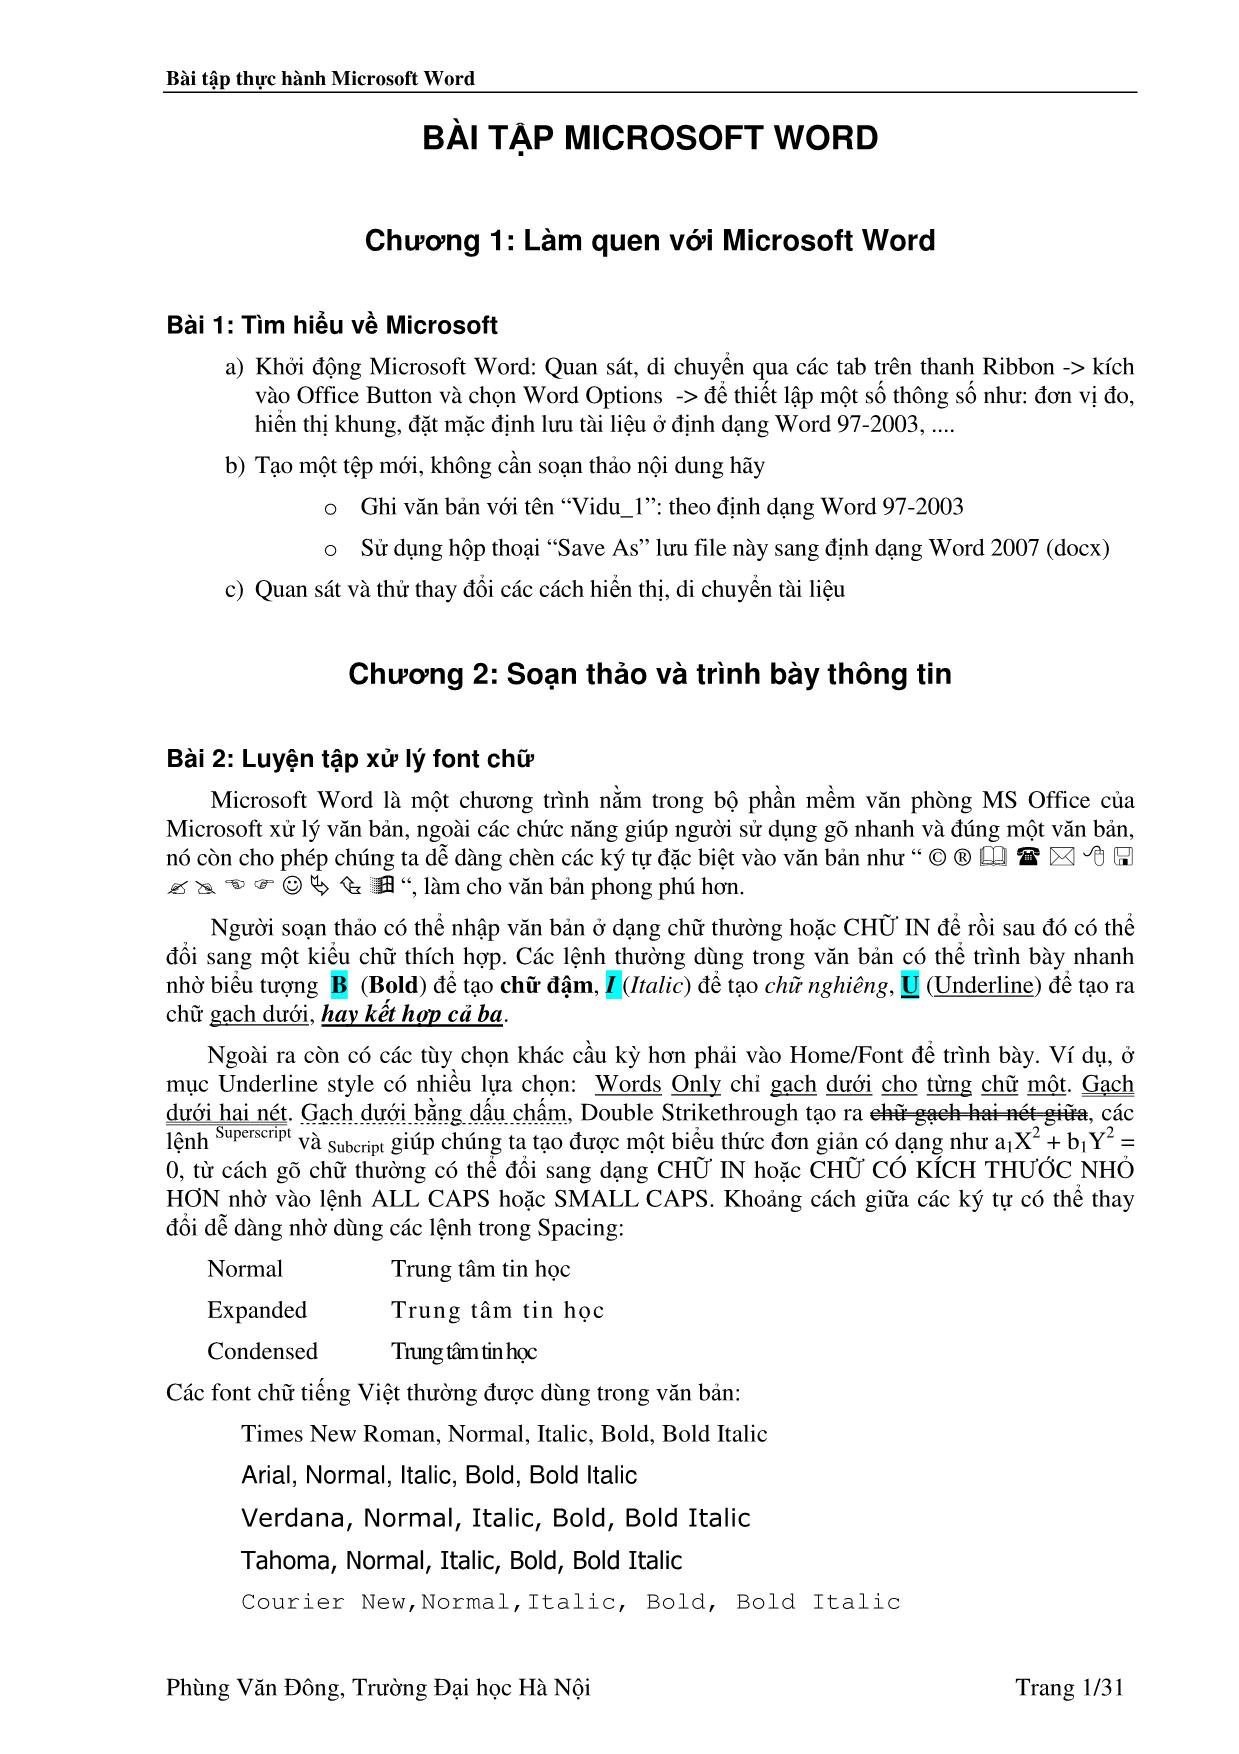 Bài tập thực hành Microsoft Word - Phùng Văn Đông trang 1